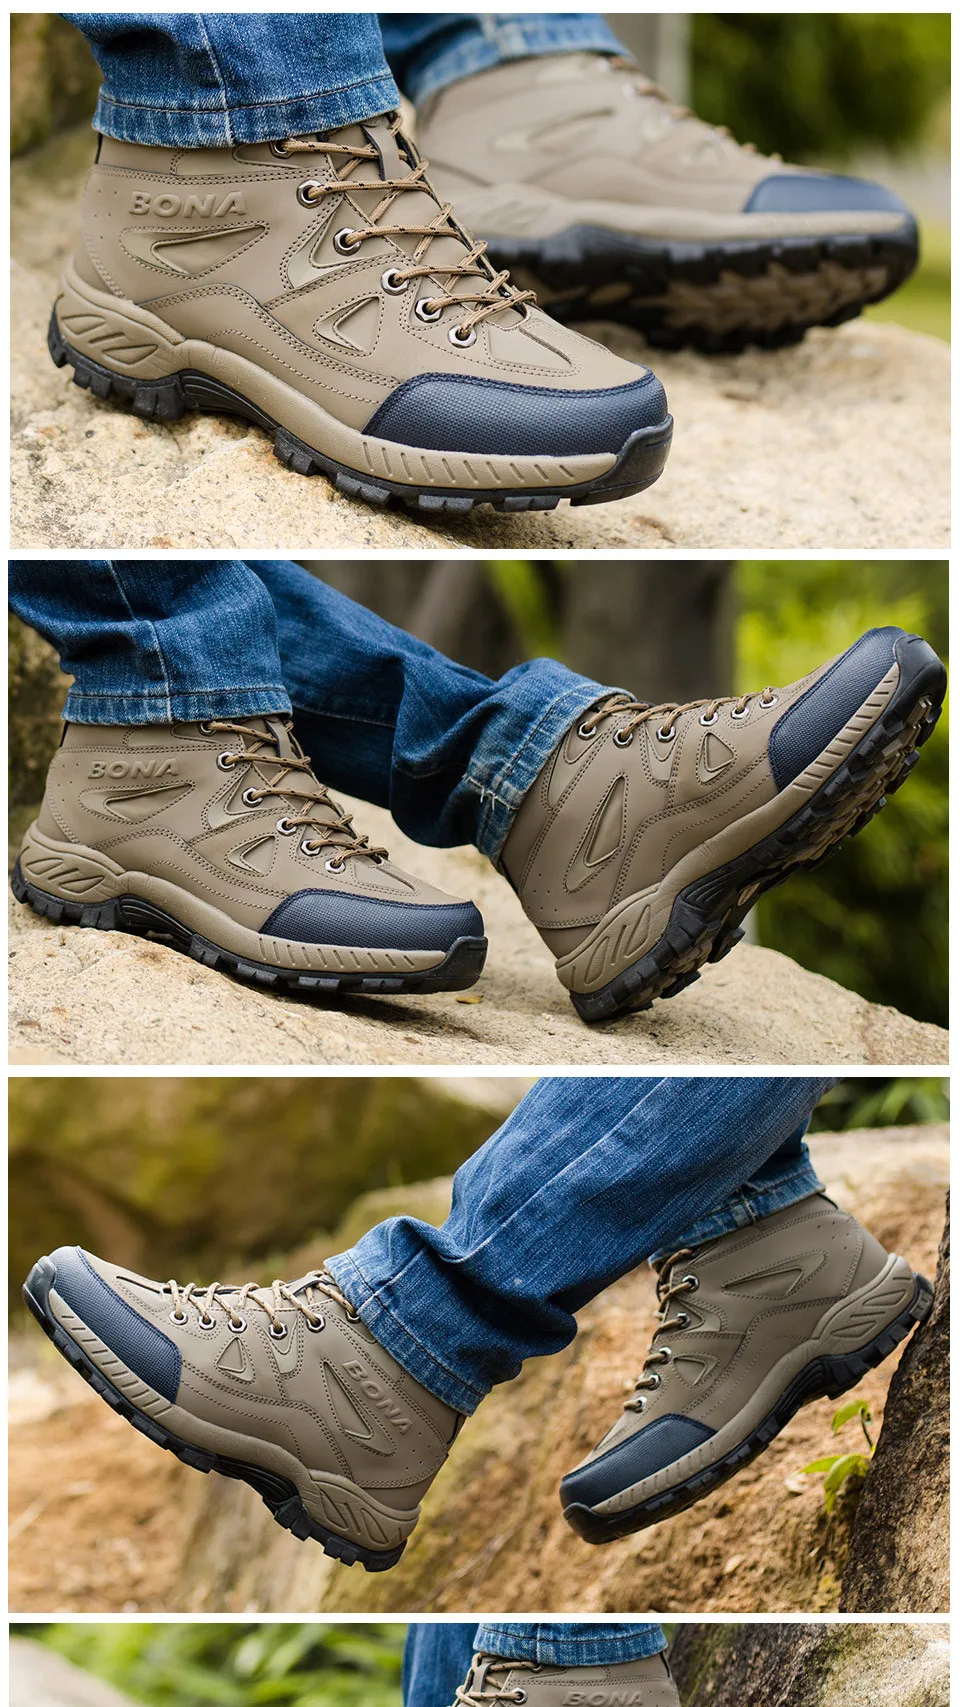 BONA/Новое поступление; мужские треккинговые ботинки; нескользящие уличные спортивные ботинки; прогулочные треккинговые кроссовки для альпинизма; Zapatillas; удобные ботинки